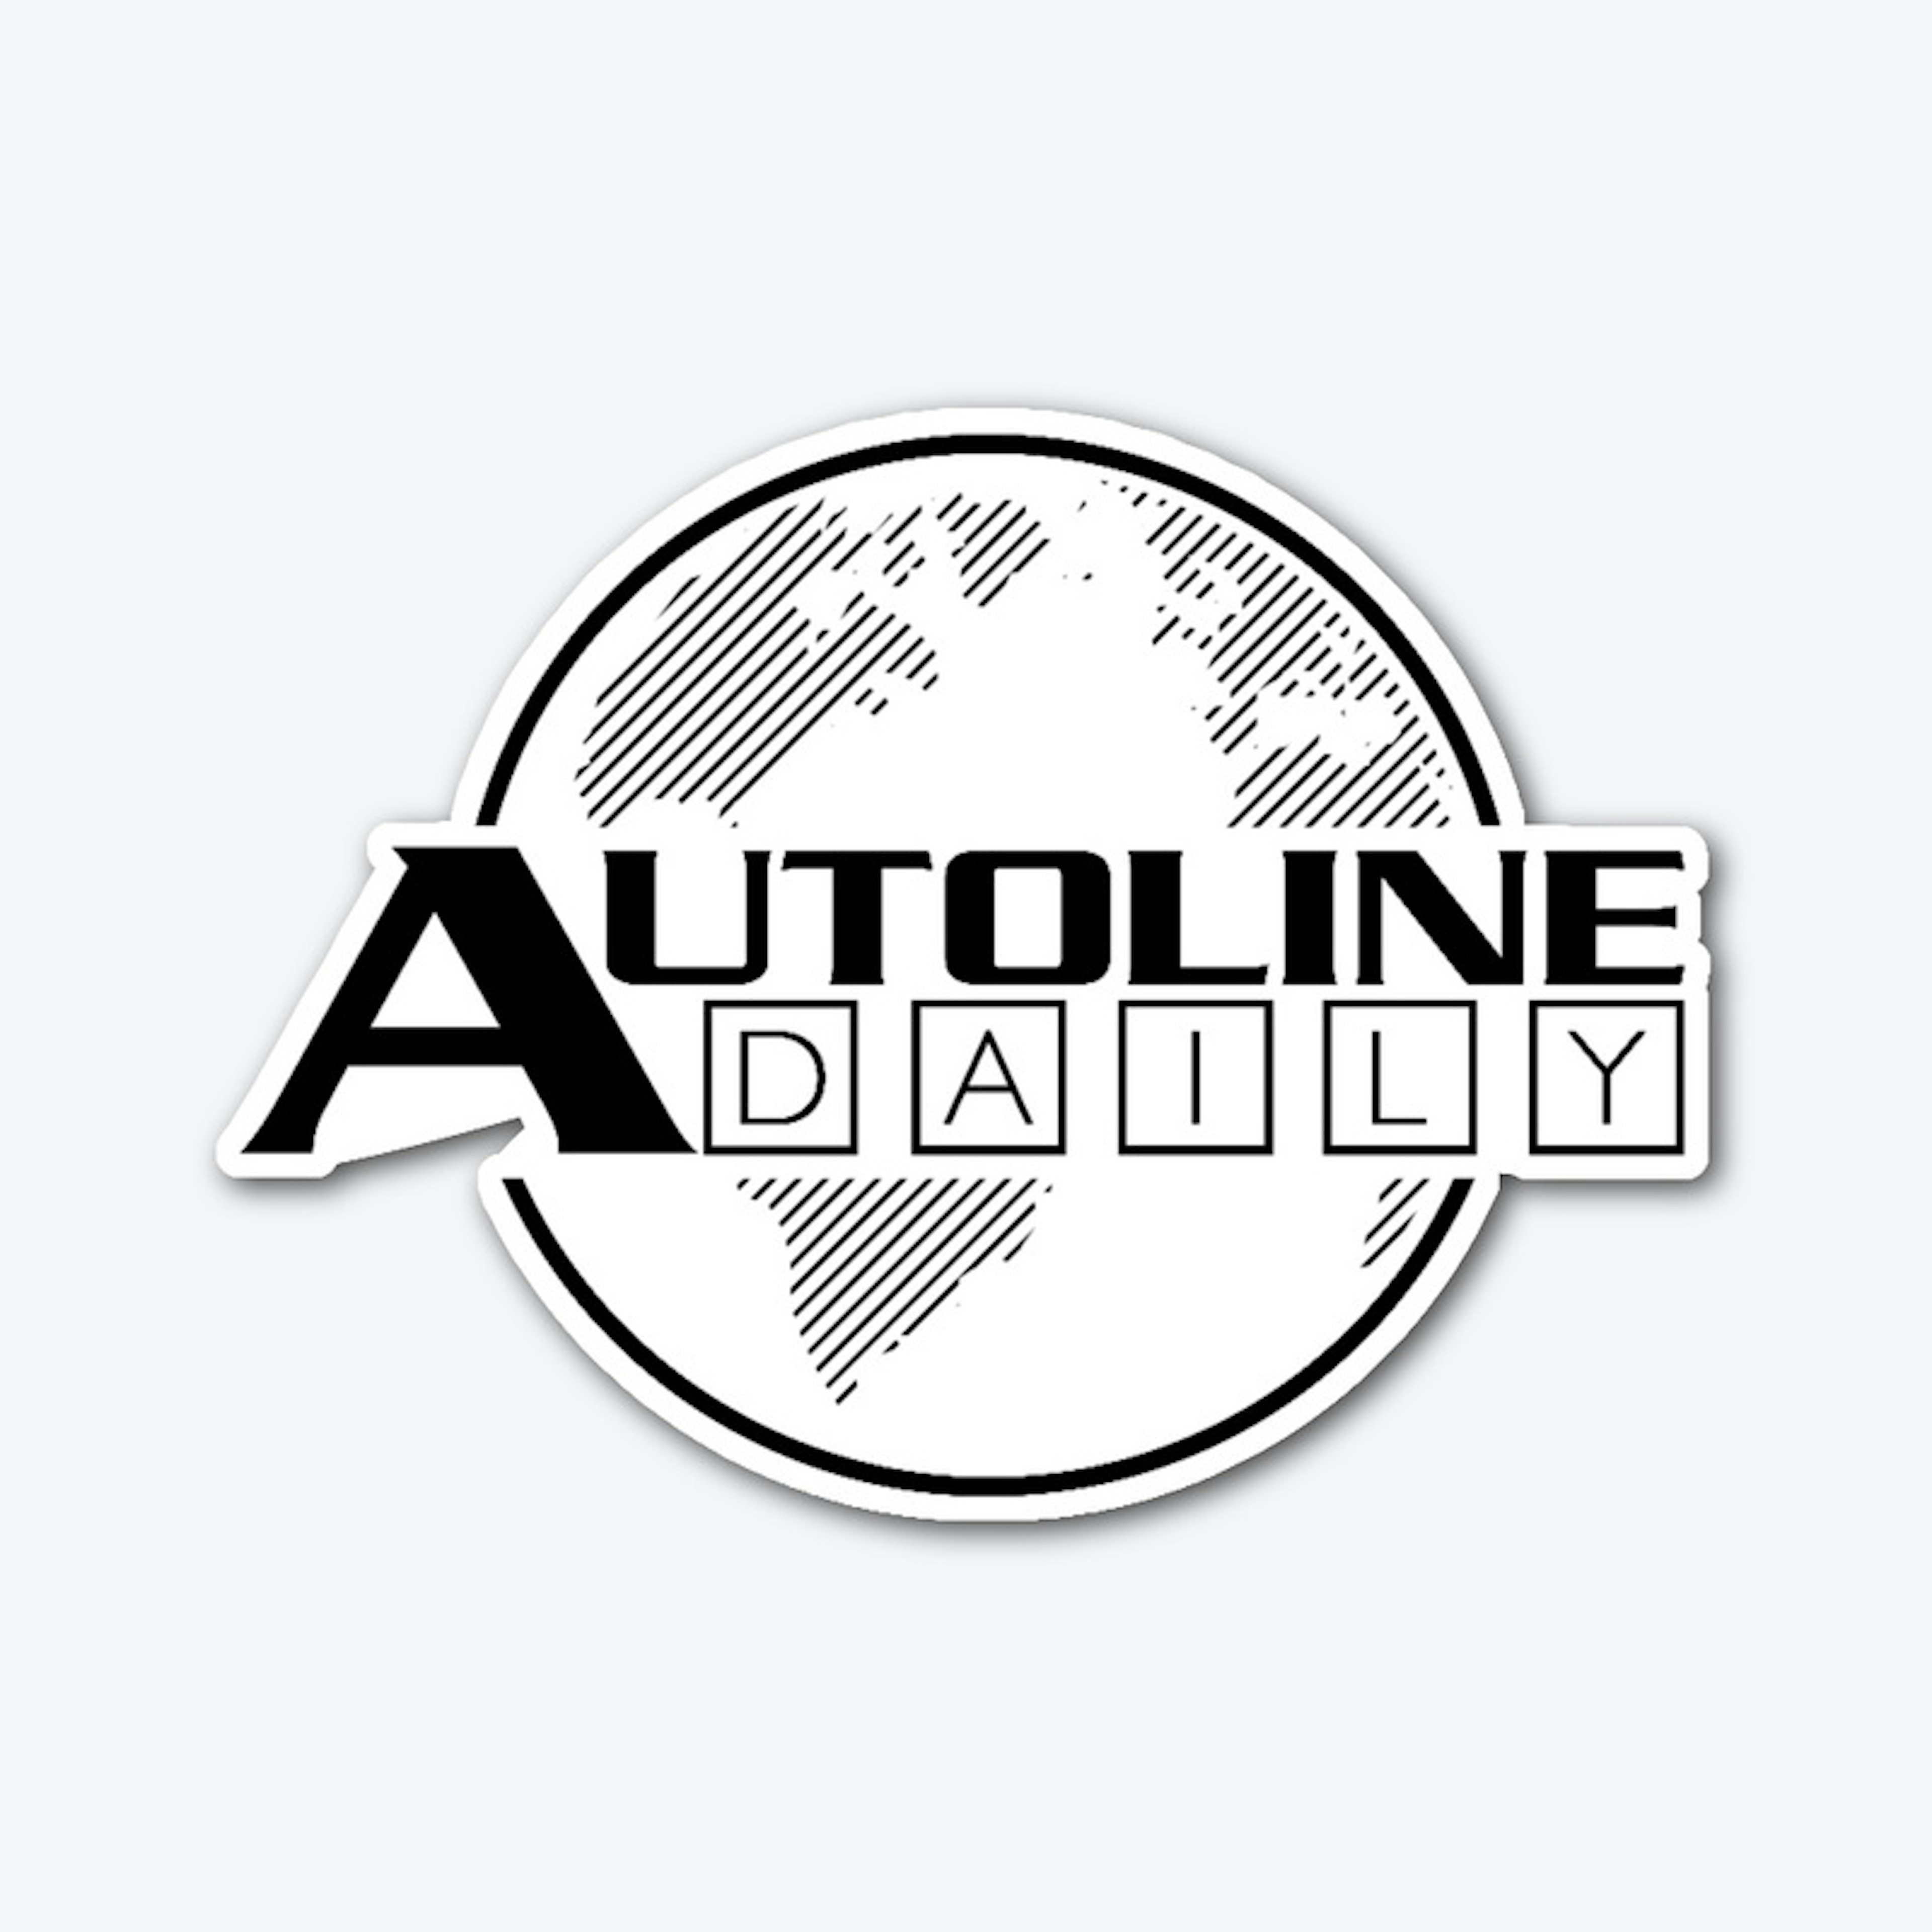 Autoline Daily - Sticker